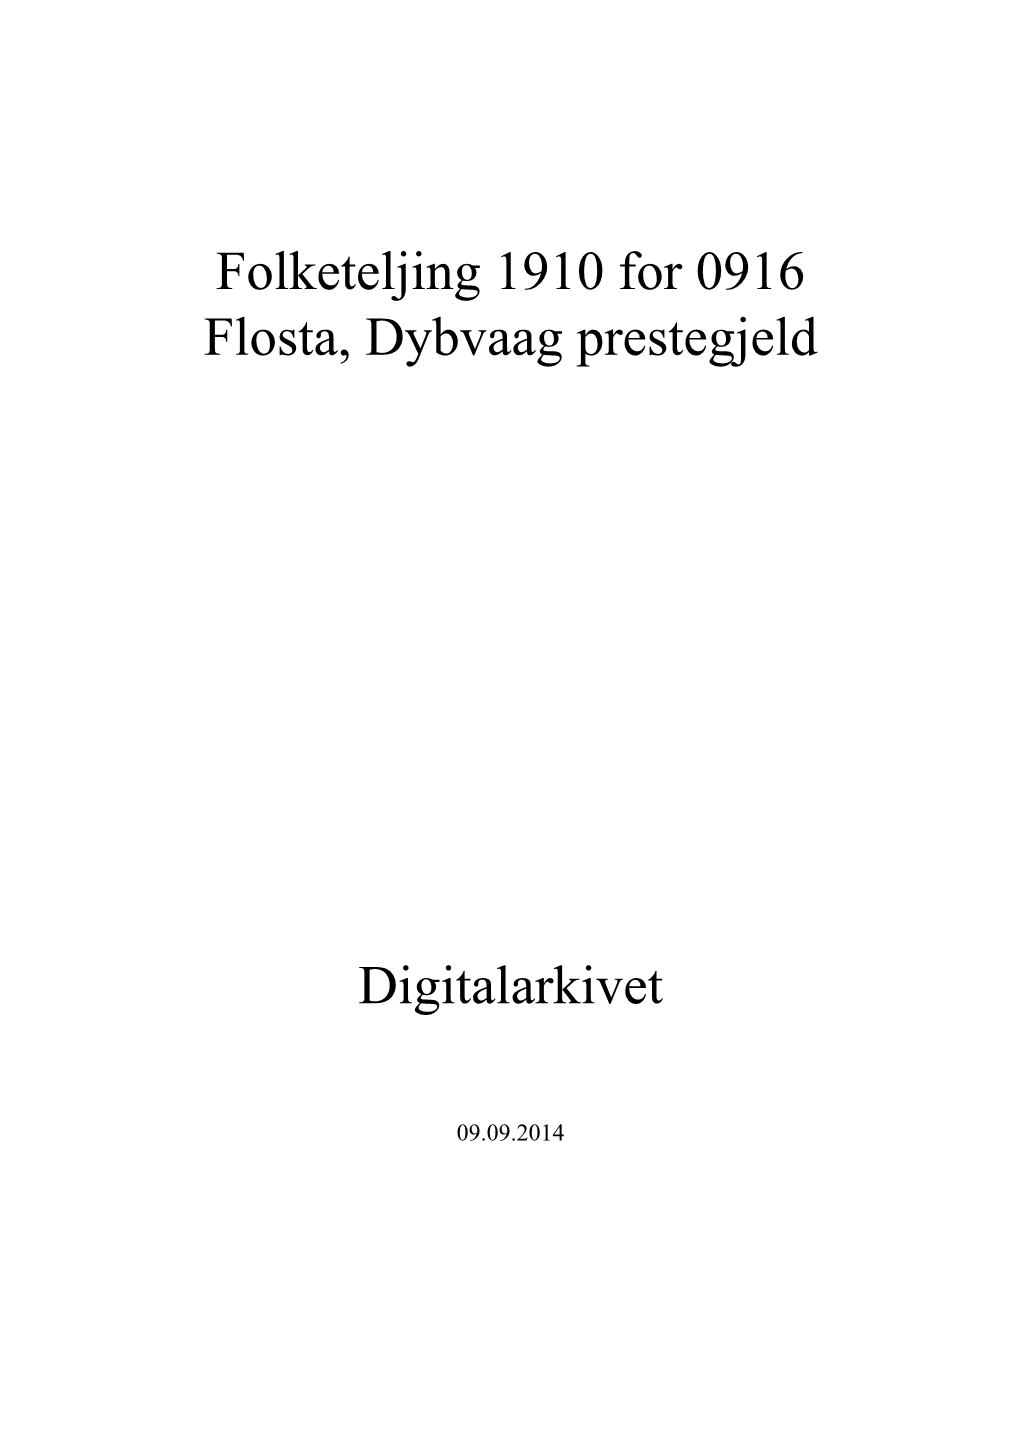 Folketeljing 1910 for 0916 Flosta, Dybvaag Prestegjeld Digitalarkivet